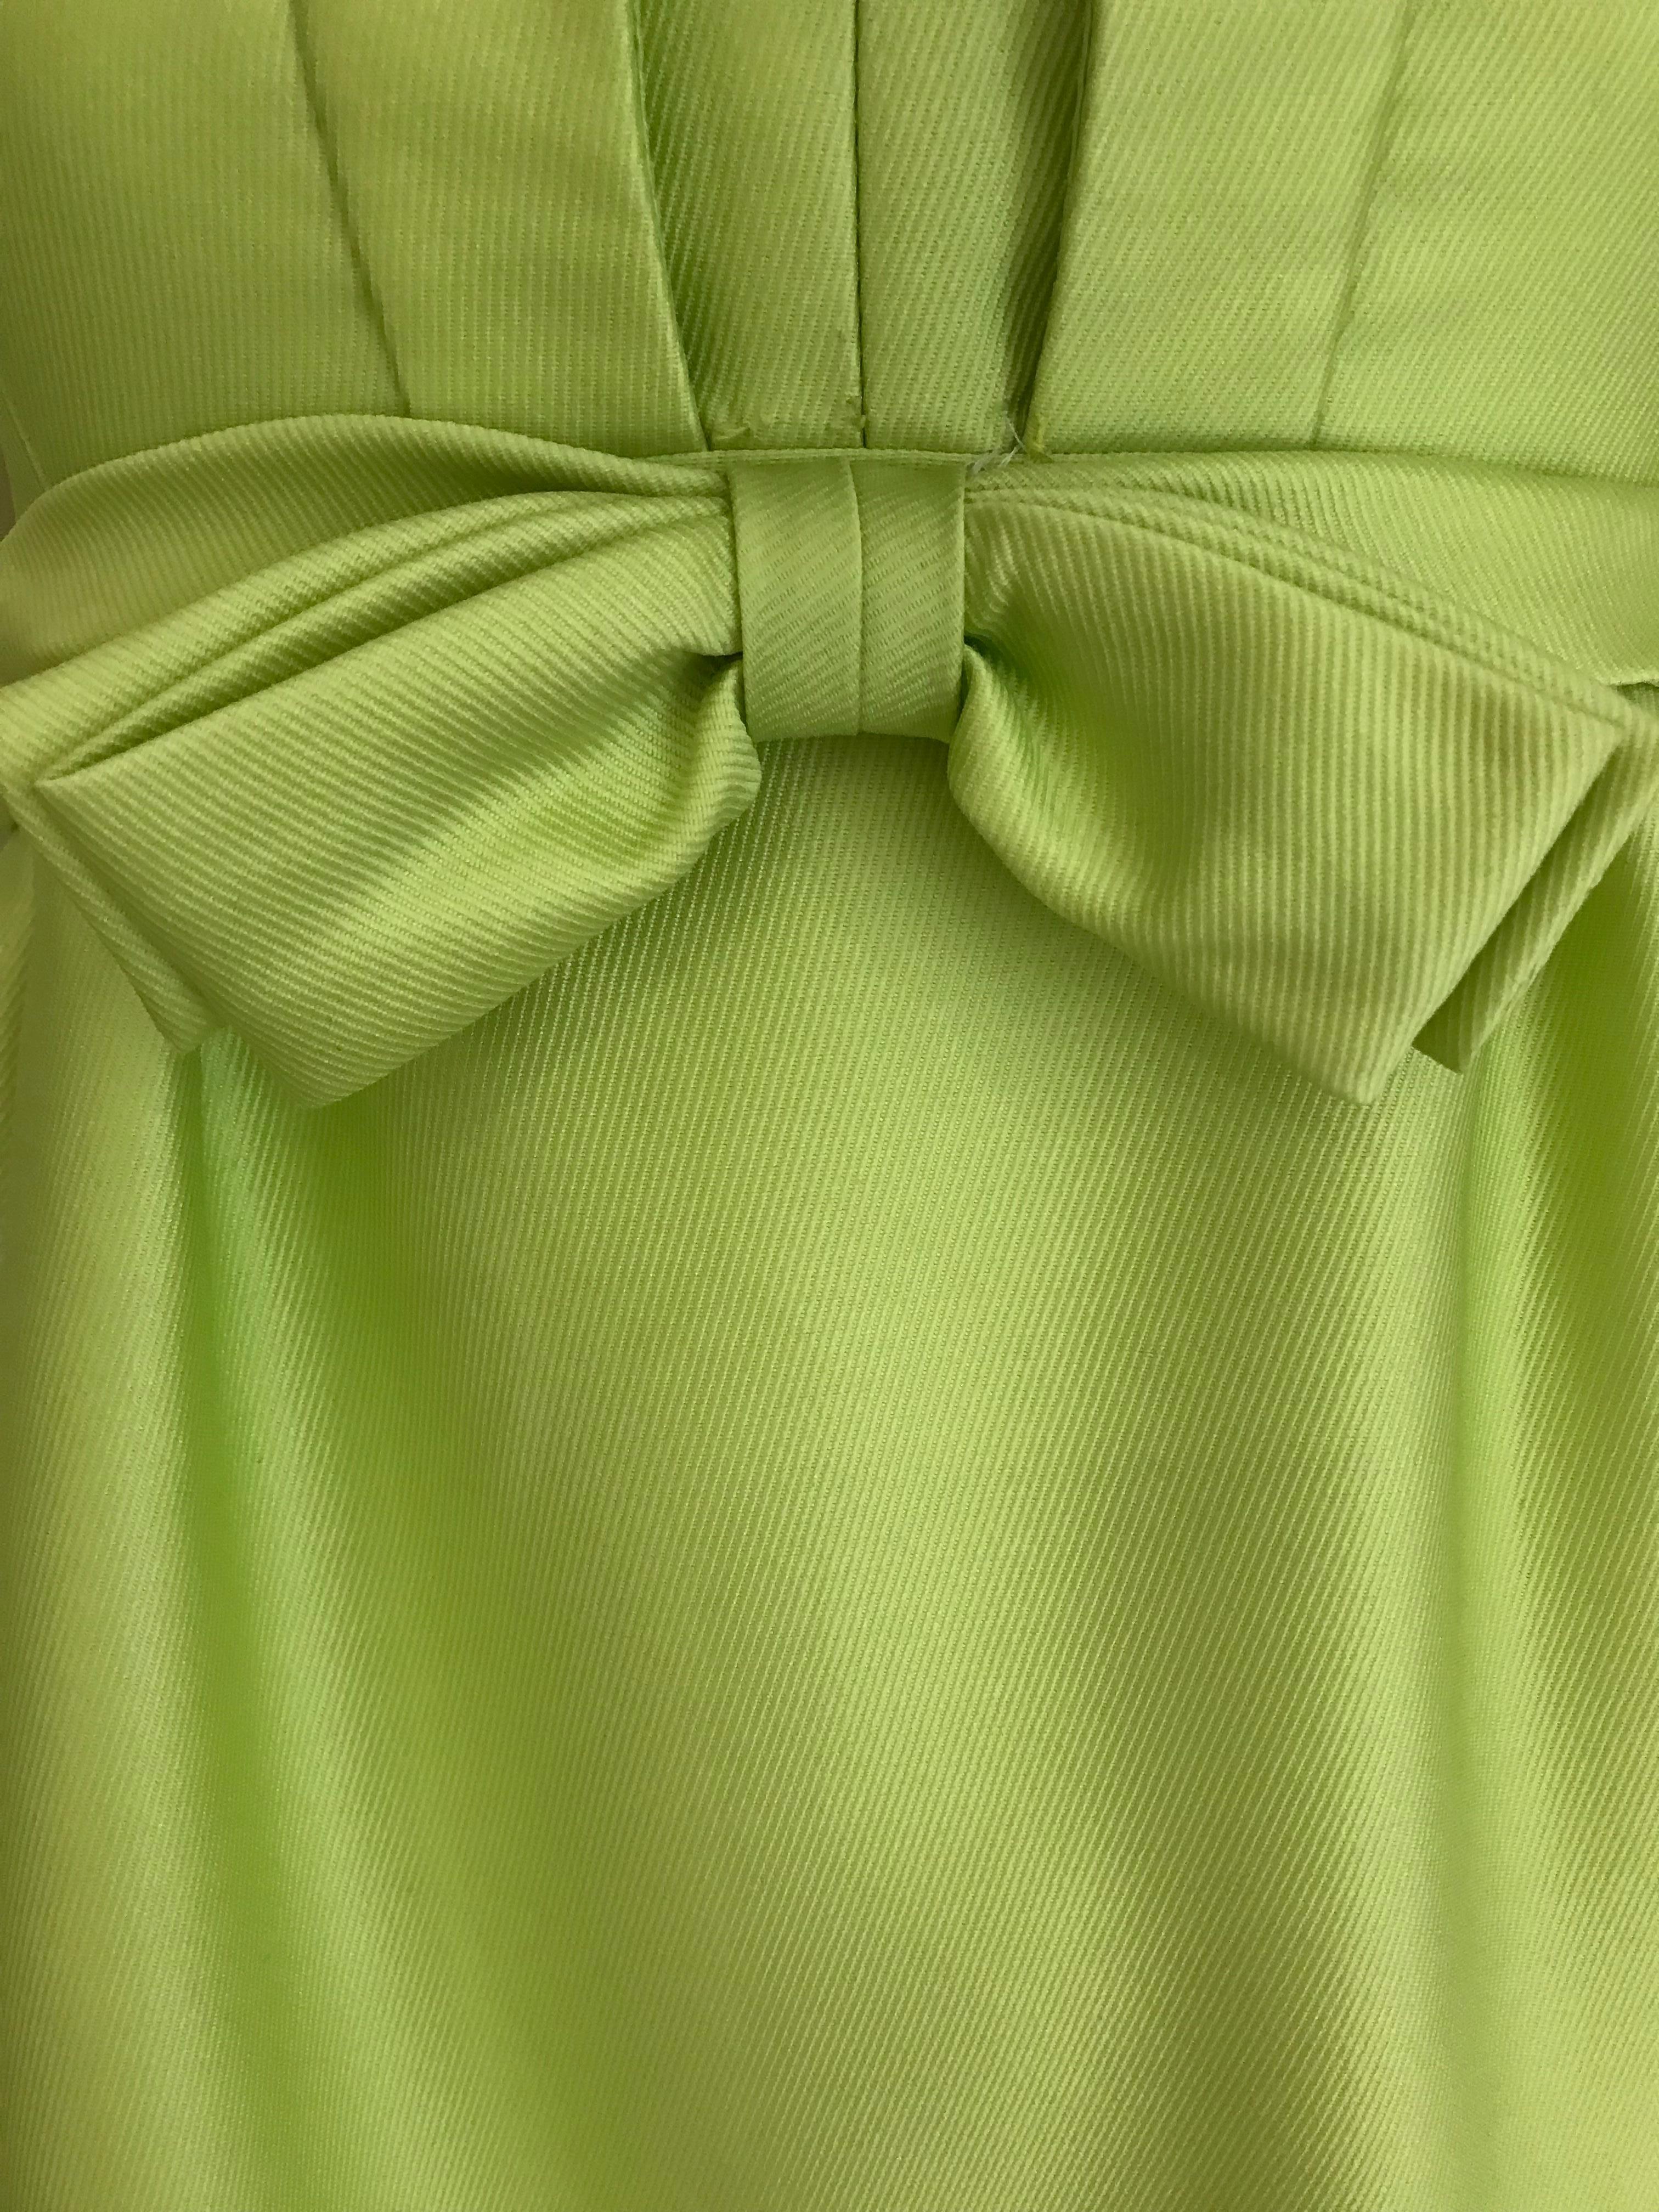 Vert Malcolm Starr - Soie verte des années 1960  Robe avec nœud en vente